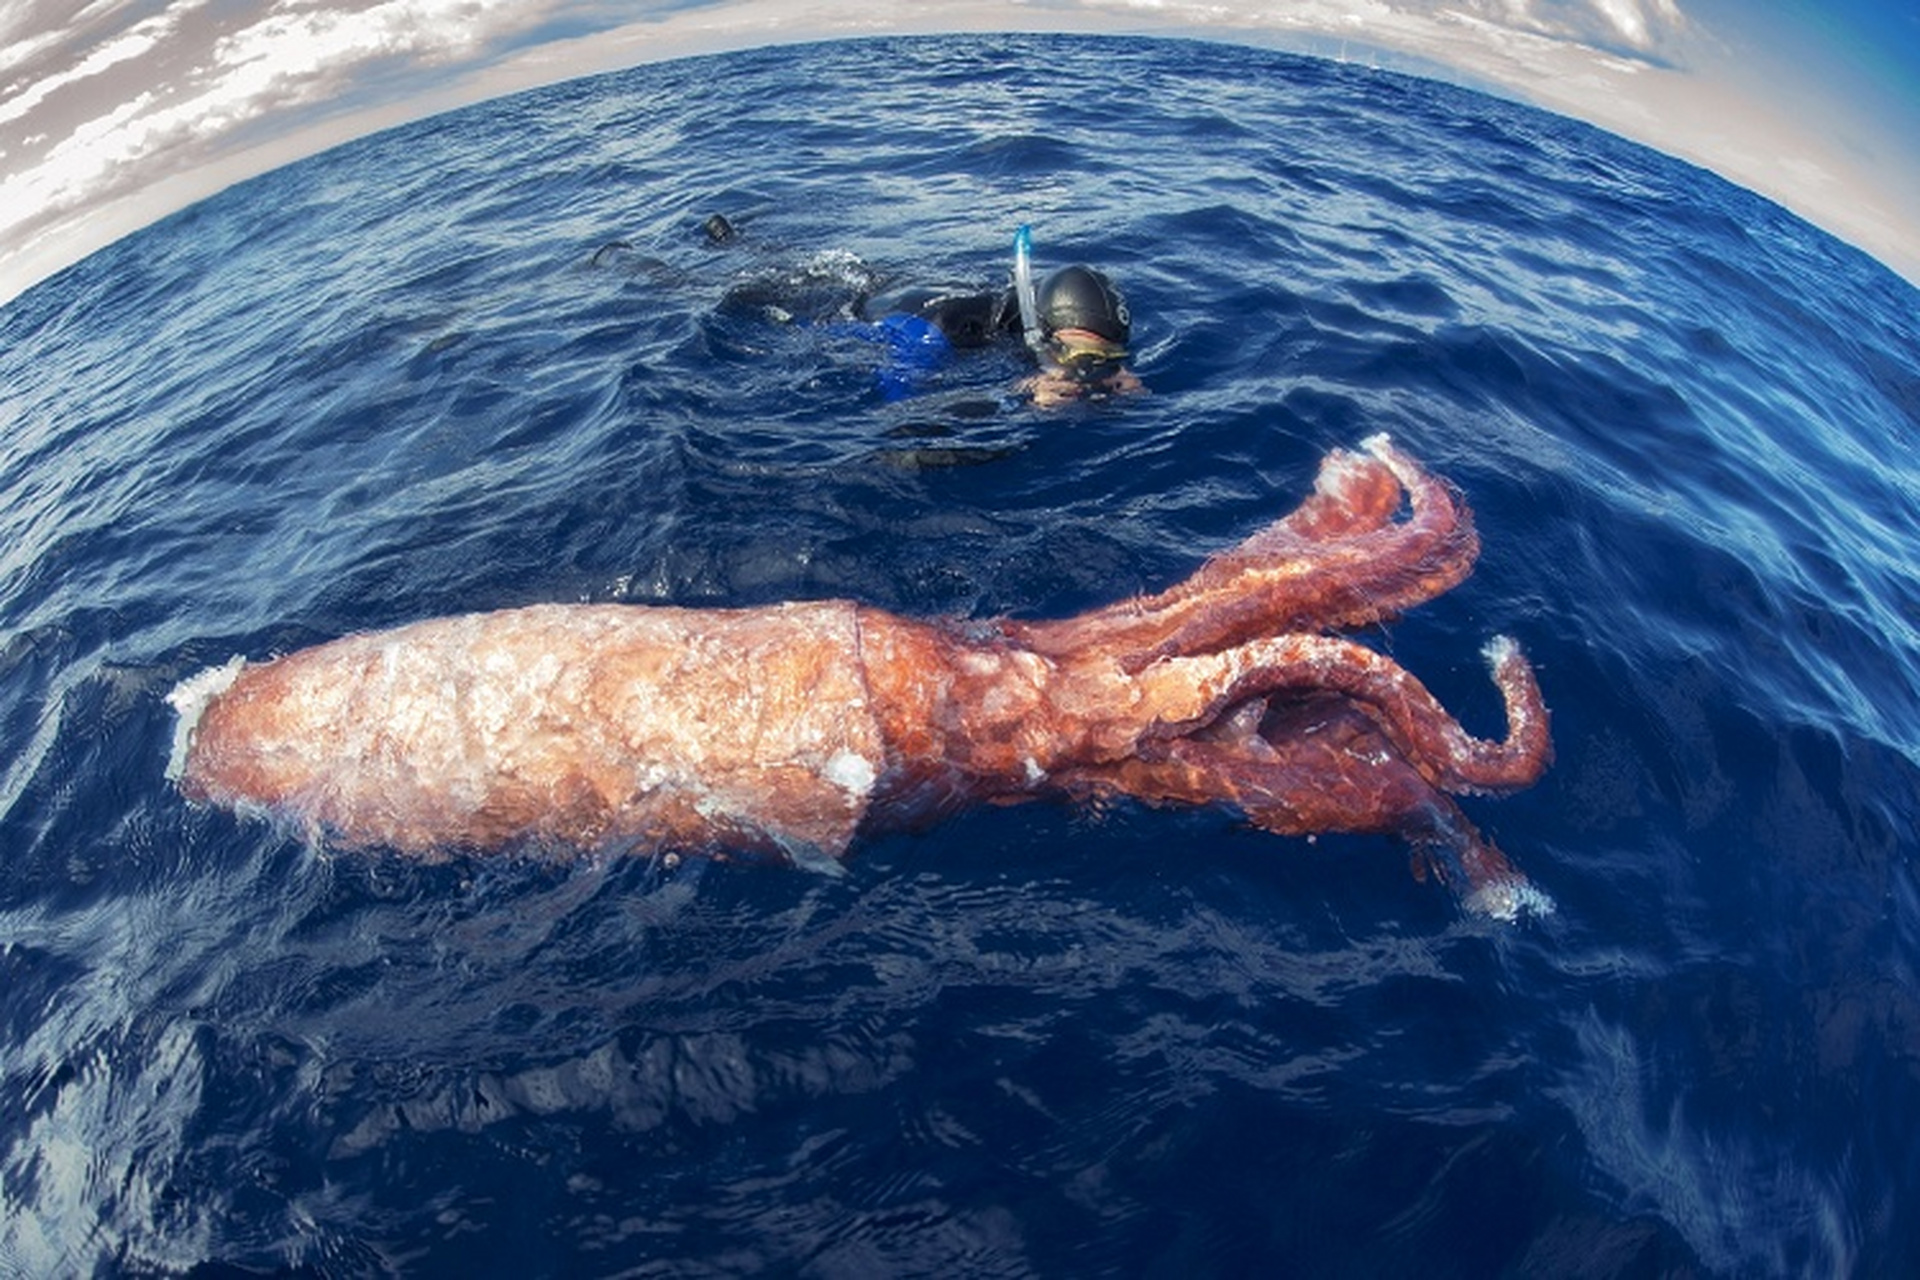 大西洋大王乌贼 一只大王乌贼(giant squid)的残躯漂浮在海面上,推测